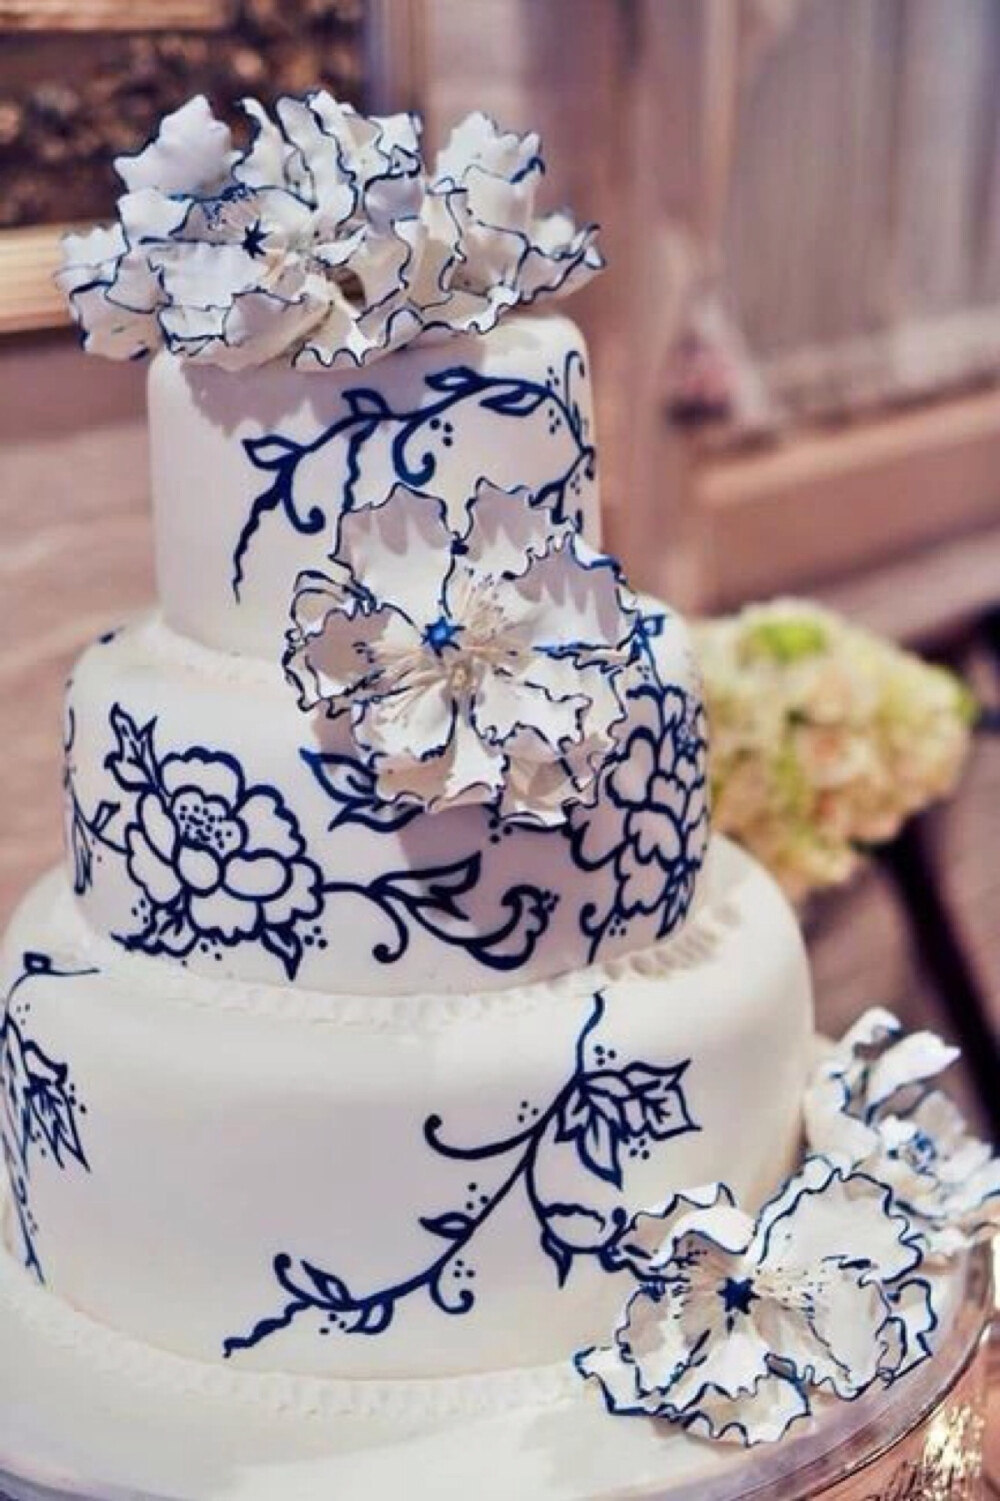 翻糖 婚礼 鲜花 白色 青花瓷 蛋糕 甜点